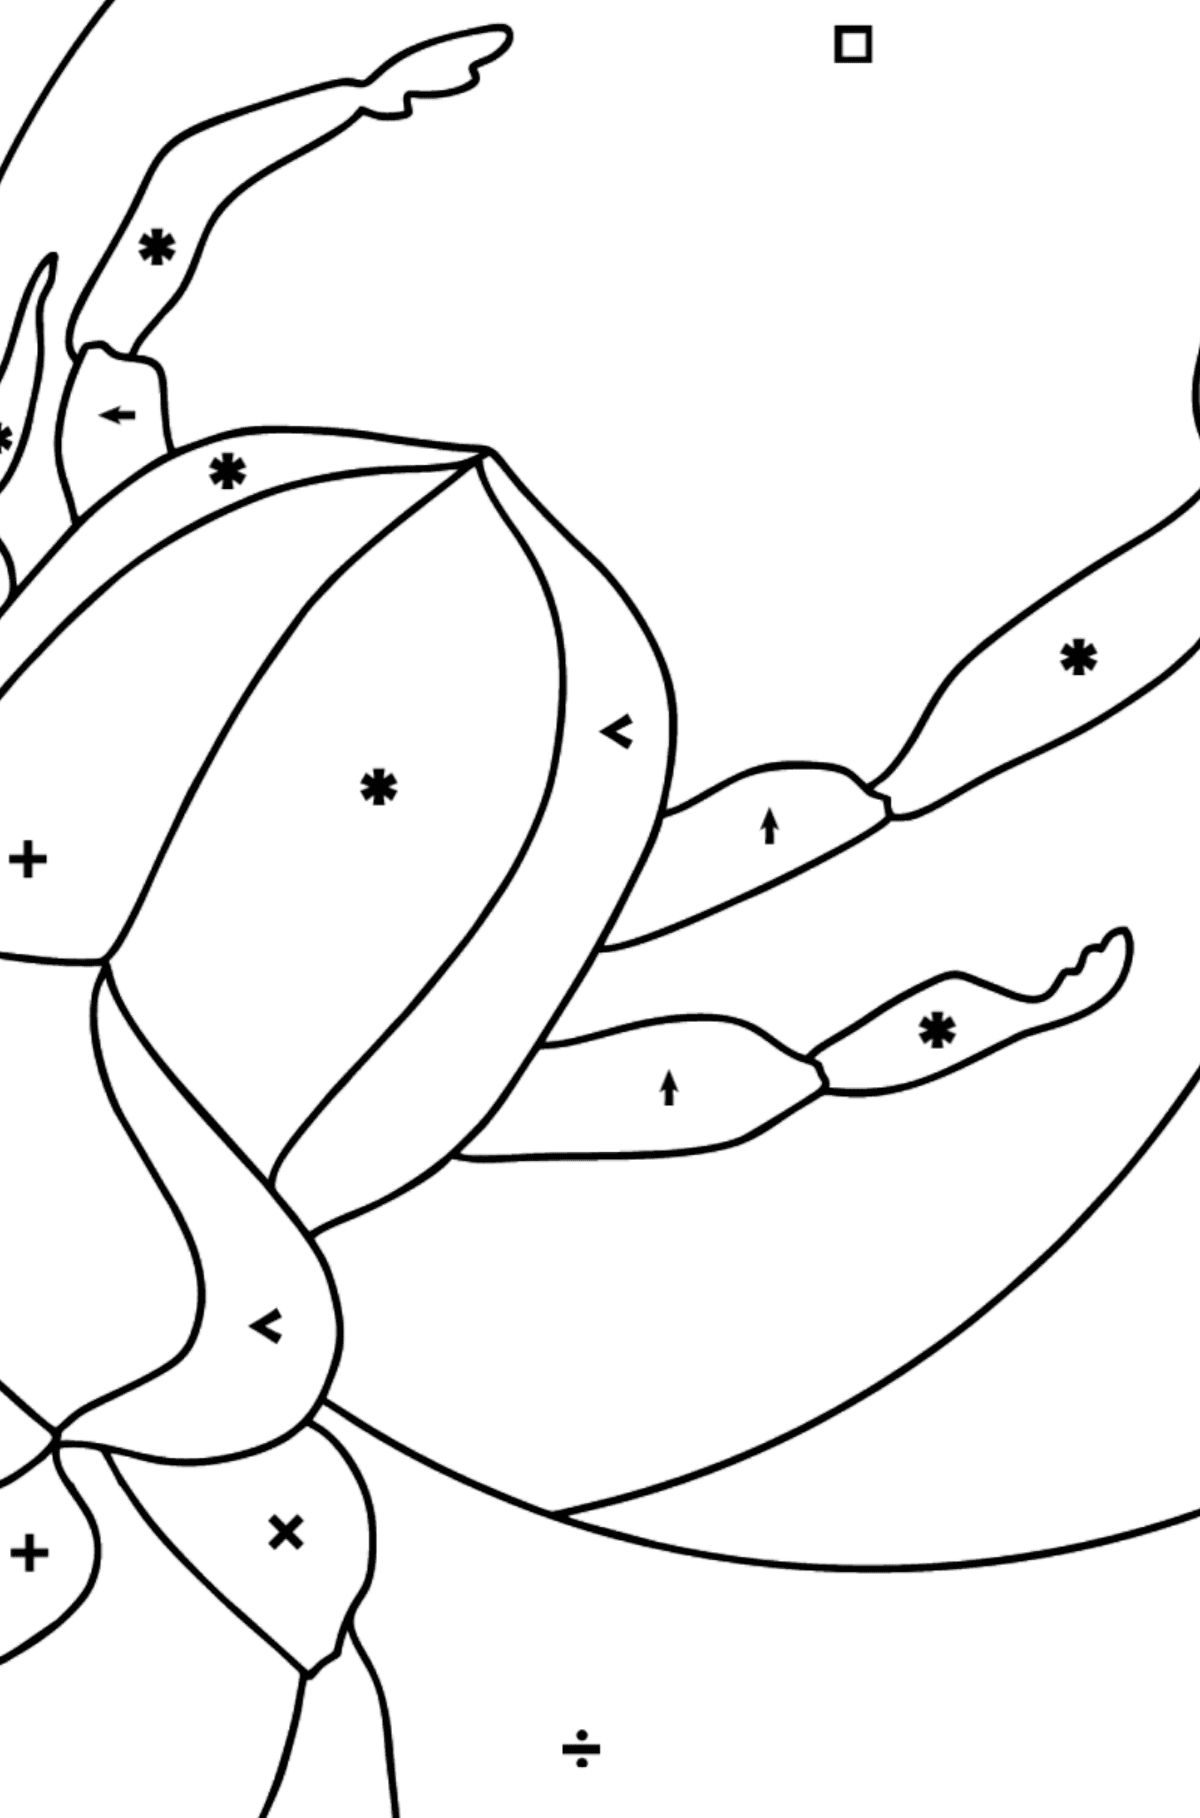 Desenho de escaravelhombolo para colorir (difícil) - Colorir por Símbolos para Crianças